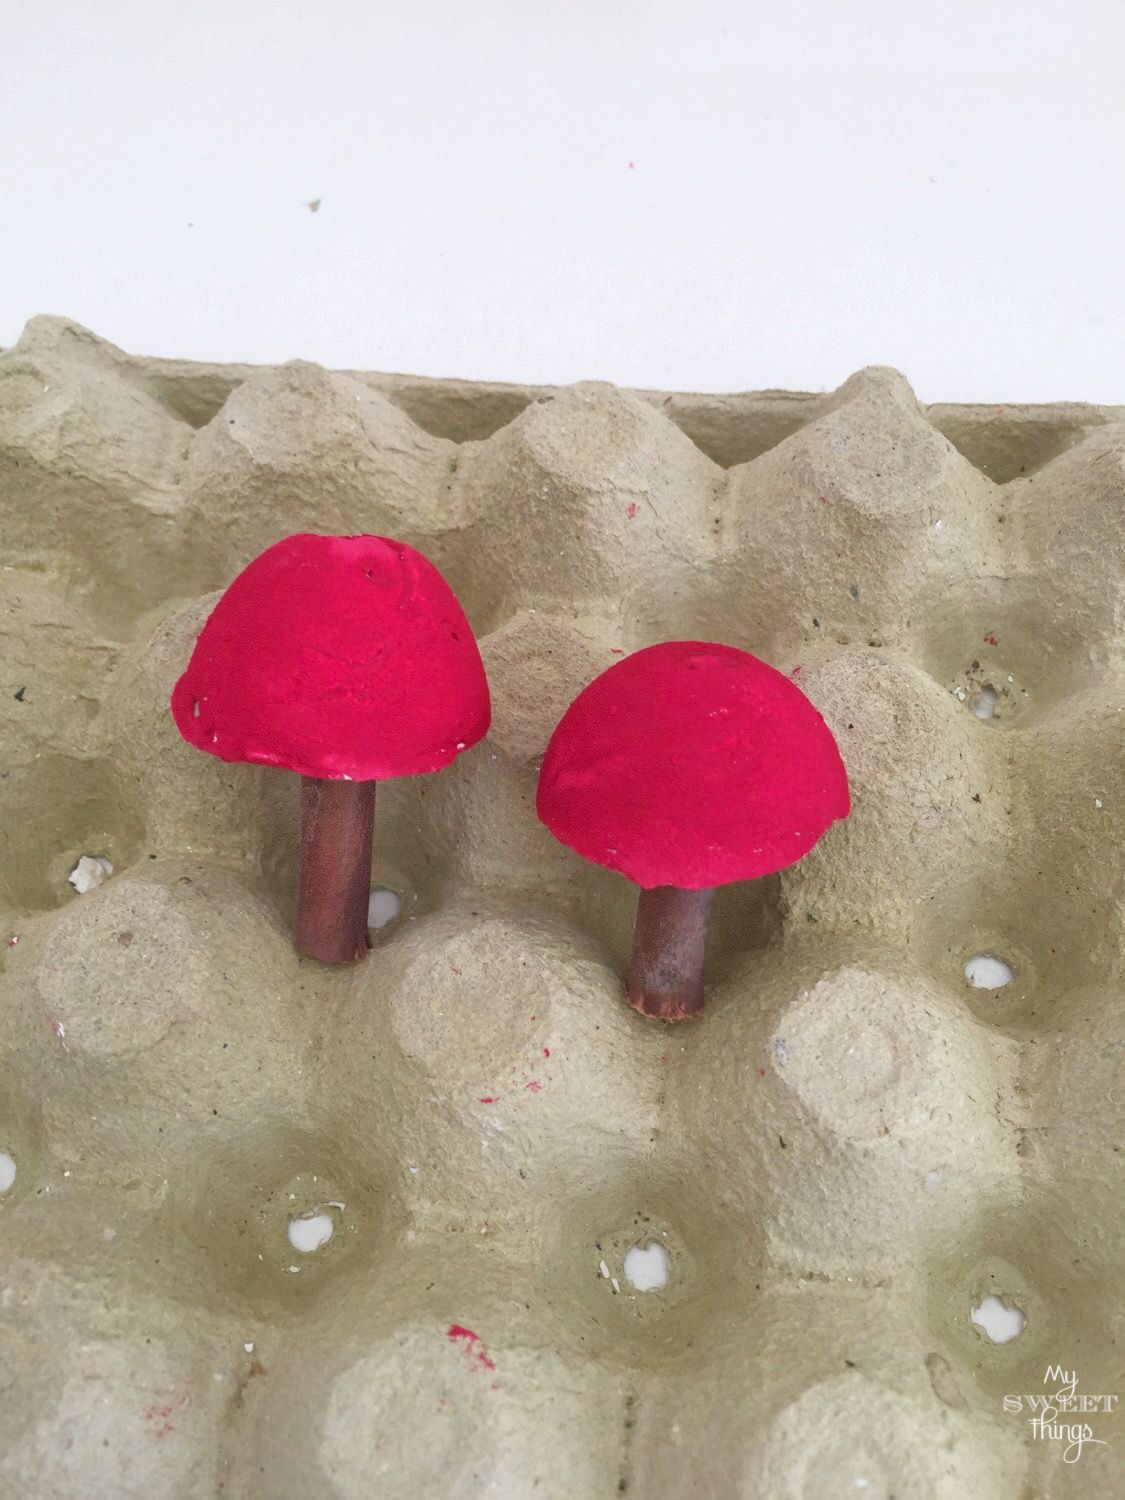 DIY Cement Mushrooms ·· Via www.sweethings.net